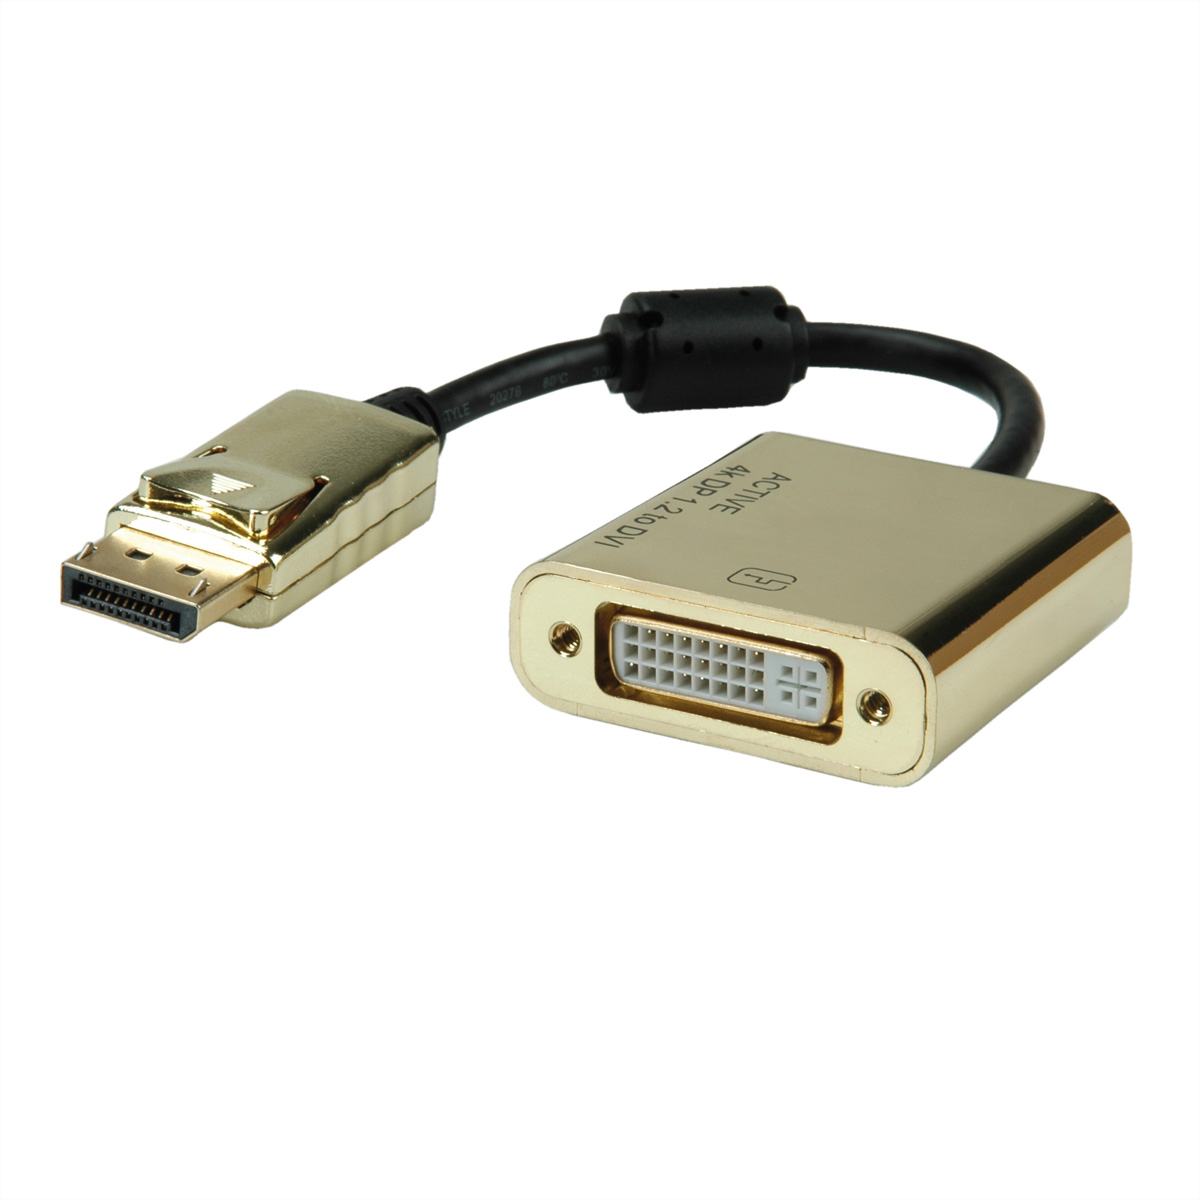 DP-DVI - ROLINE ST DisplayPort-DVI Adapter Adapter, DP 4K Aktiv, v1.2, GOLD BU DVI